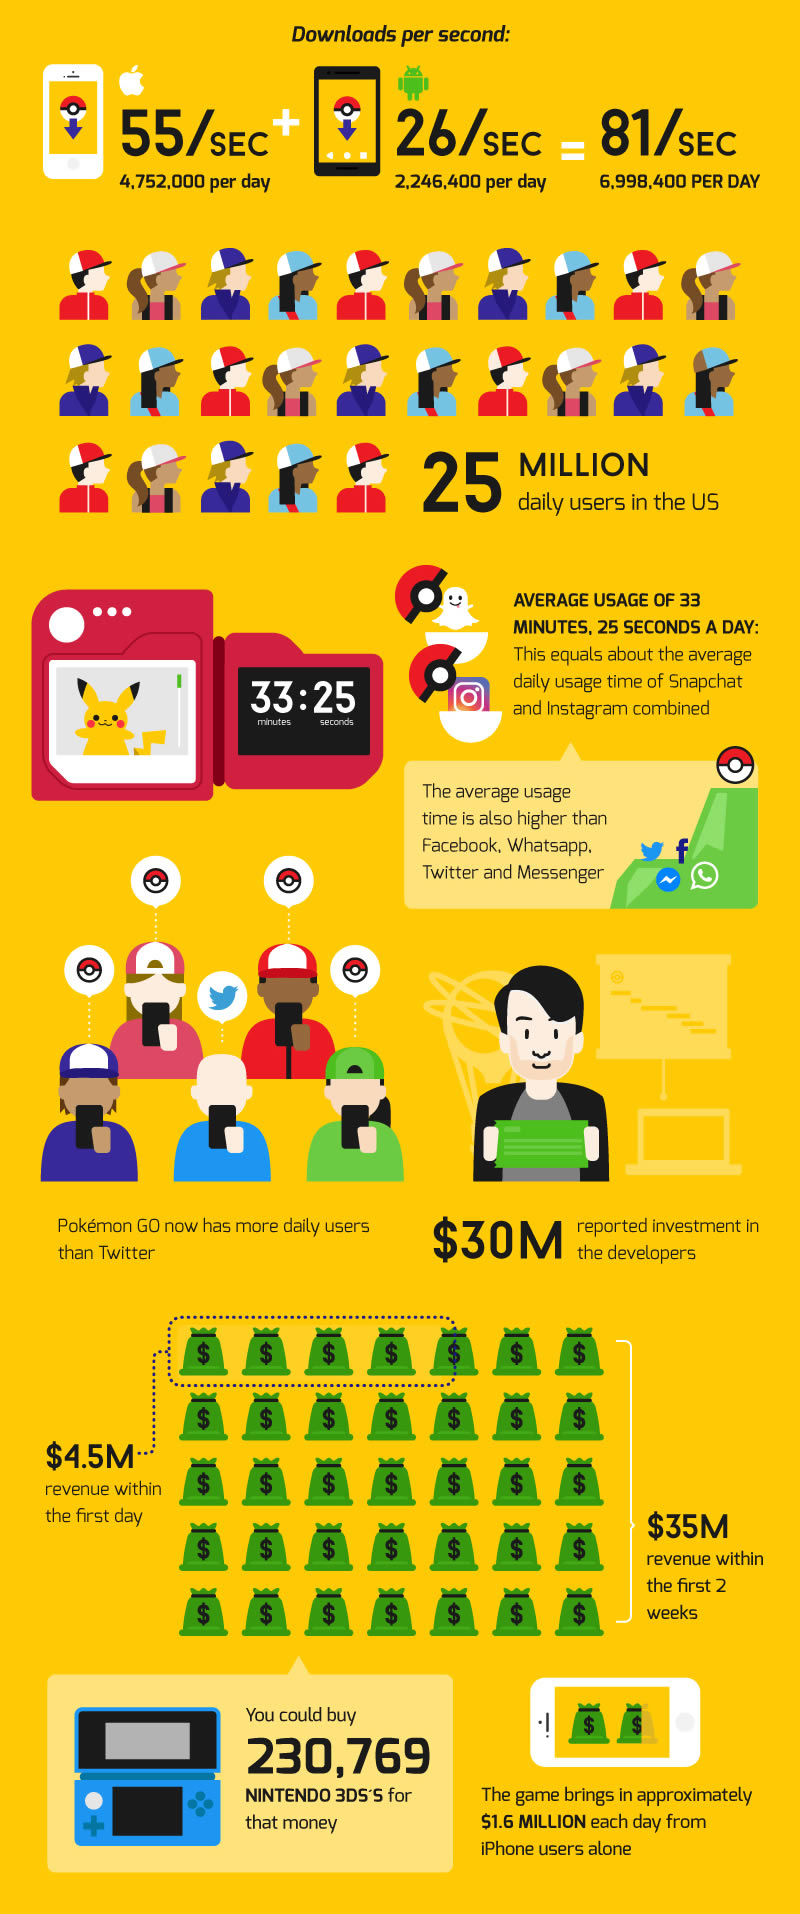 Pokémon GO - Infographic